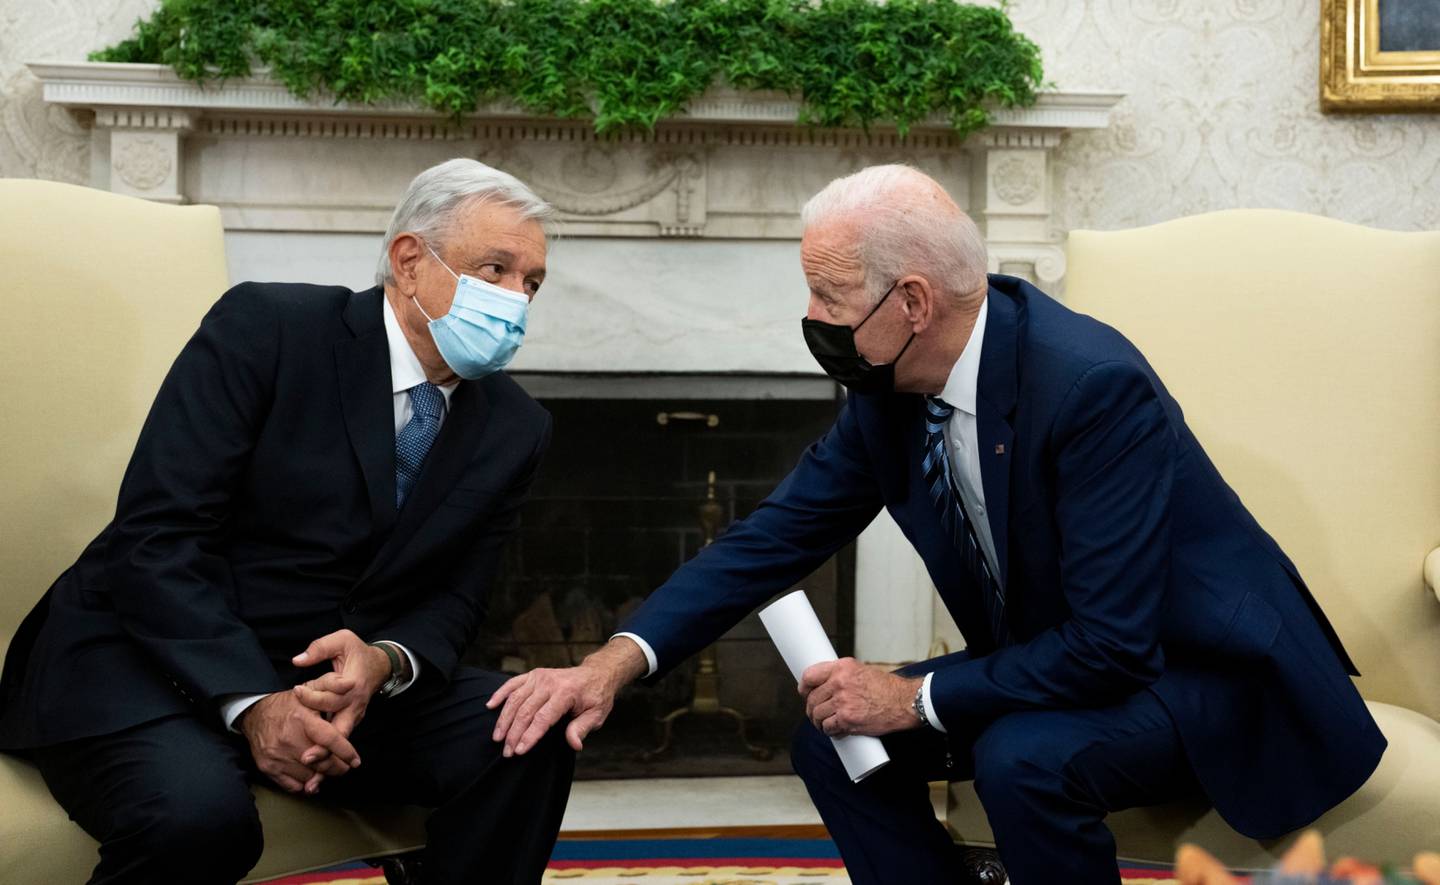 El presidente de Estados Unidos, Joe Biden, habla con su homólogo mexicano Andrés Manuel López Obrador durante un encuentro en la Oficina Oval de la Casa Blanca en Washington, D.C. en noviembre de 2021.